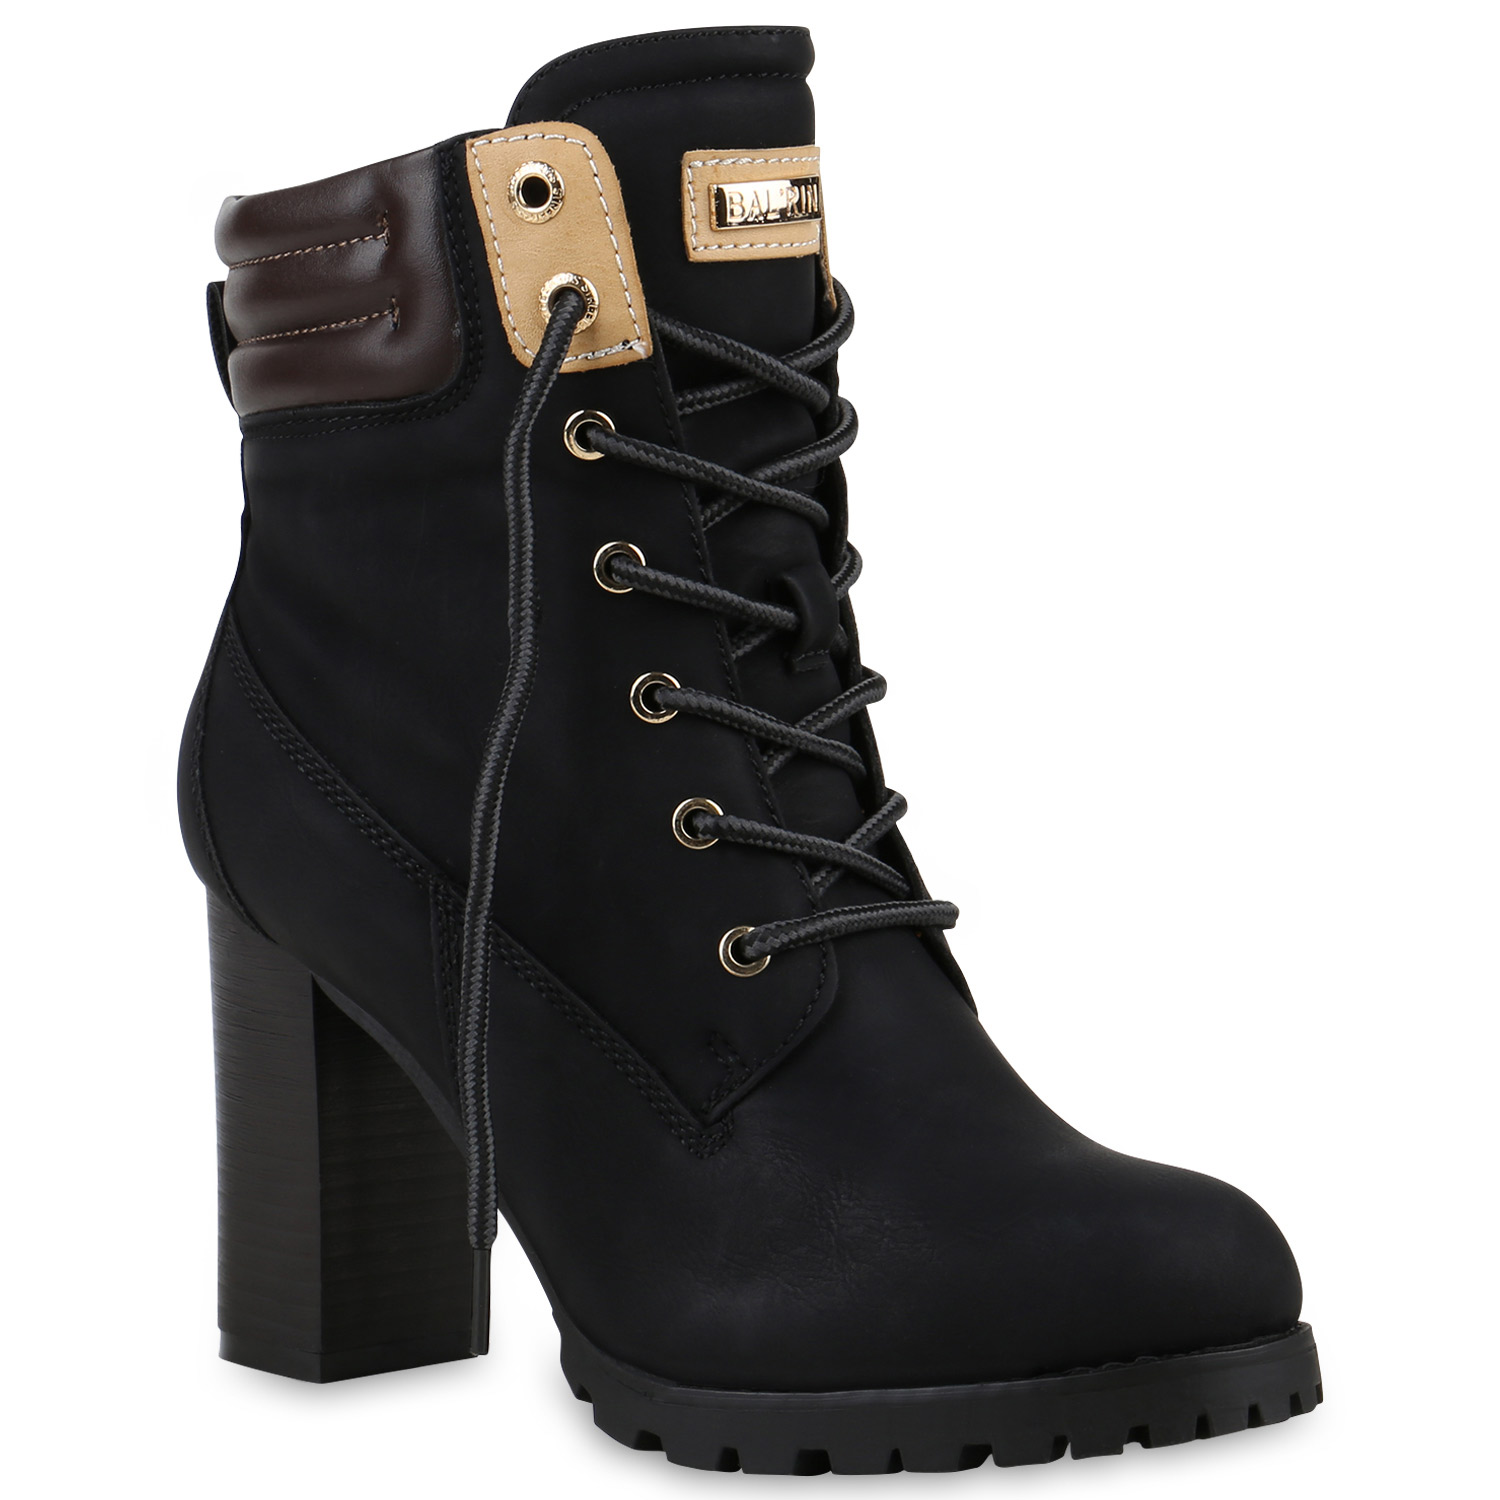 894346 Damen Outdoor Worker Boots Leder-Optik Stiefeletten Profilsohle Trendy 